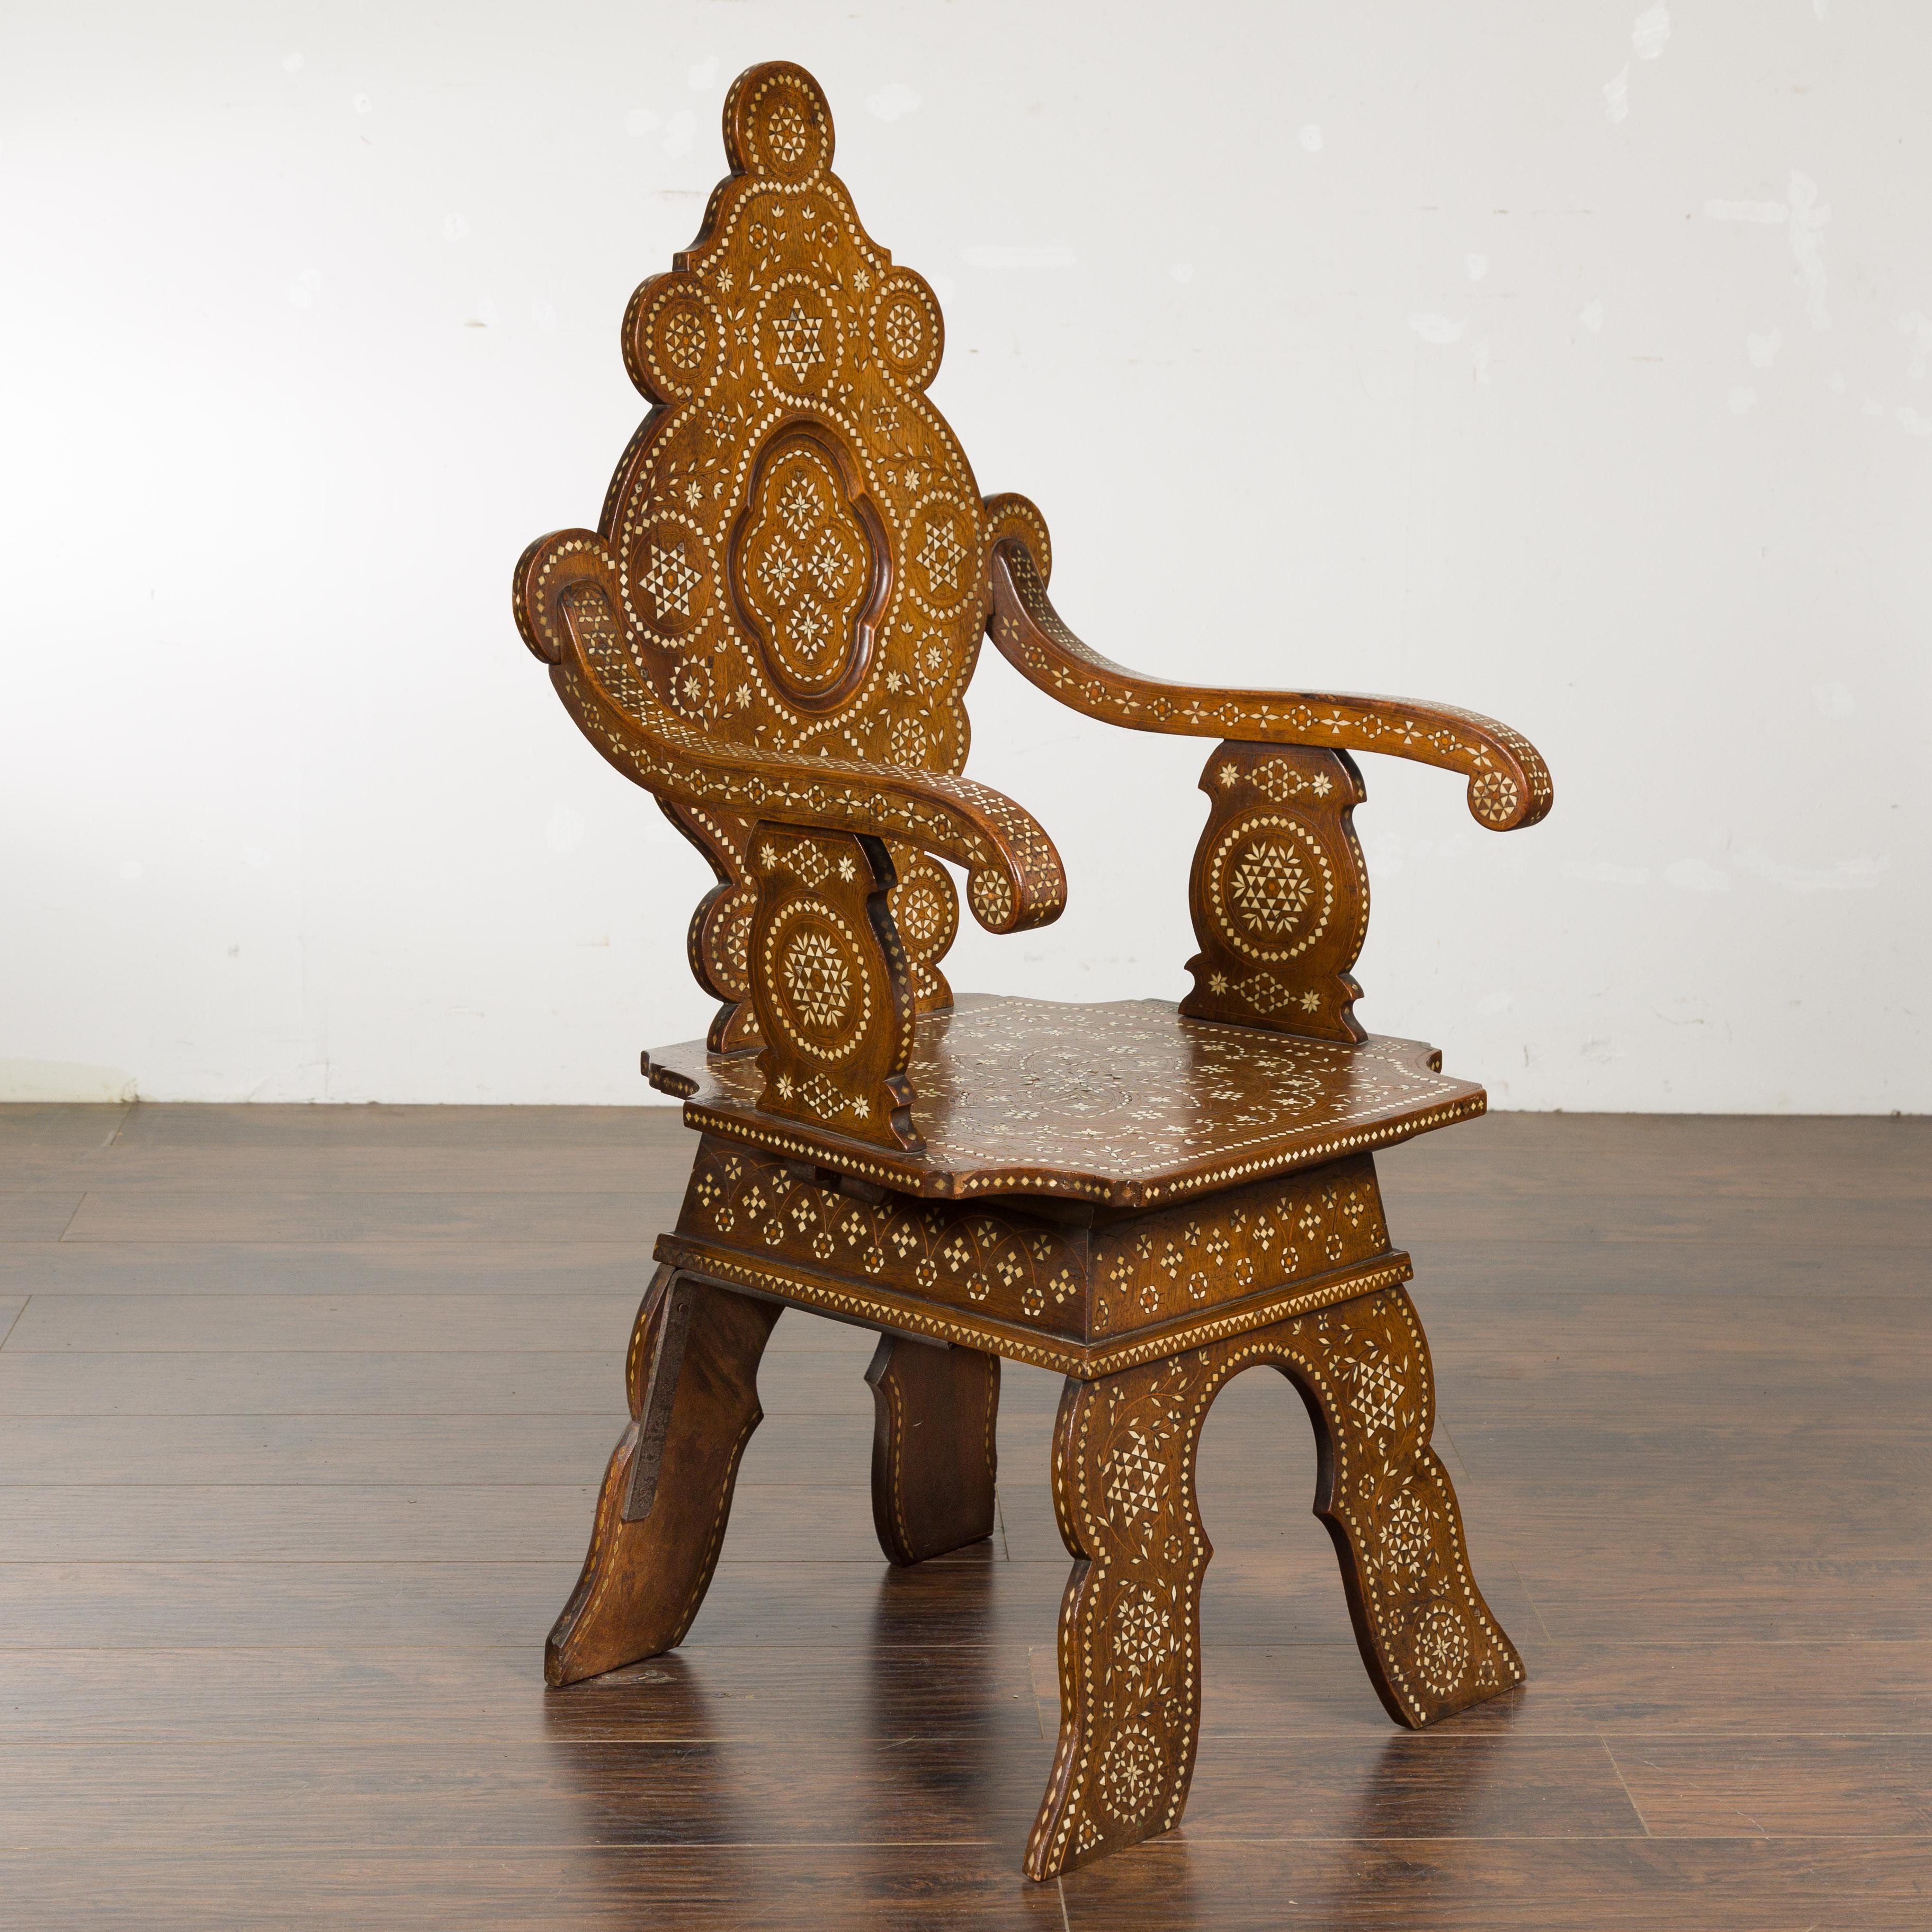 Fauteuil marocain en bois de style mauresque, datant d'environ 1900, avec un décor incrusté d'os, un dossier sculpté, des accoudoirs en volute et une base sculptée. Ce fauteuil marocain en bois de style mauresque, datant d'environ 1900, est un